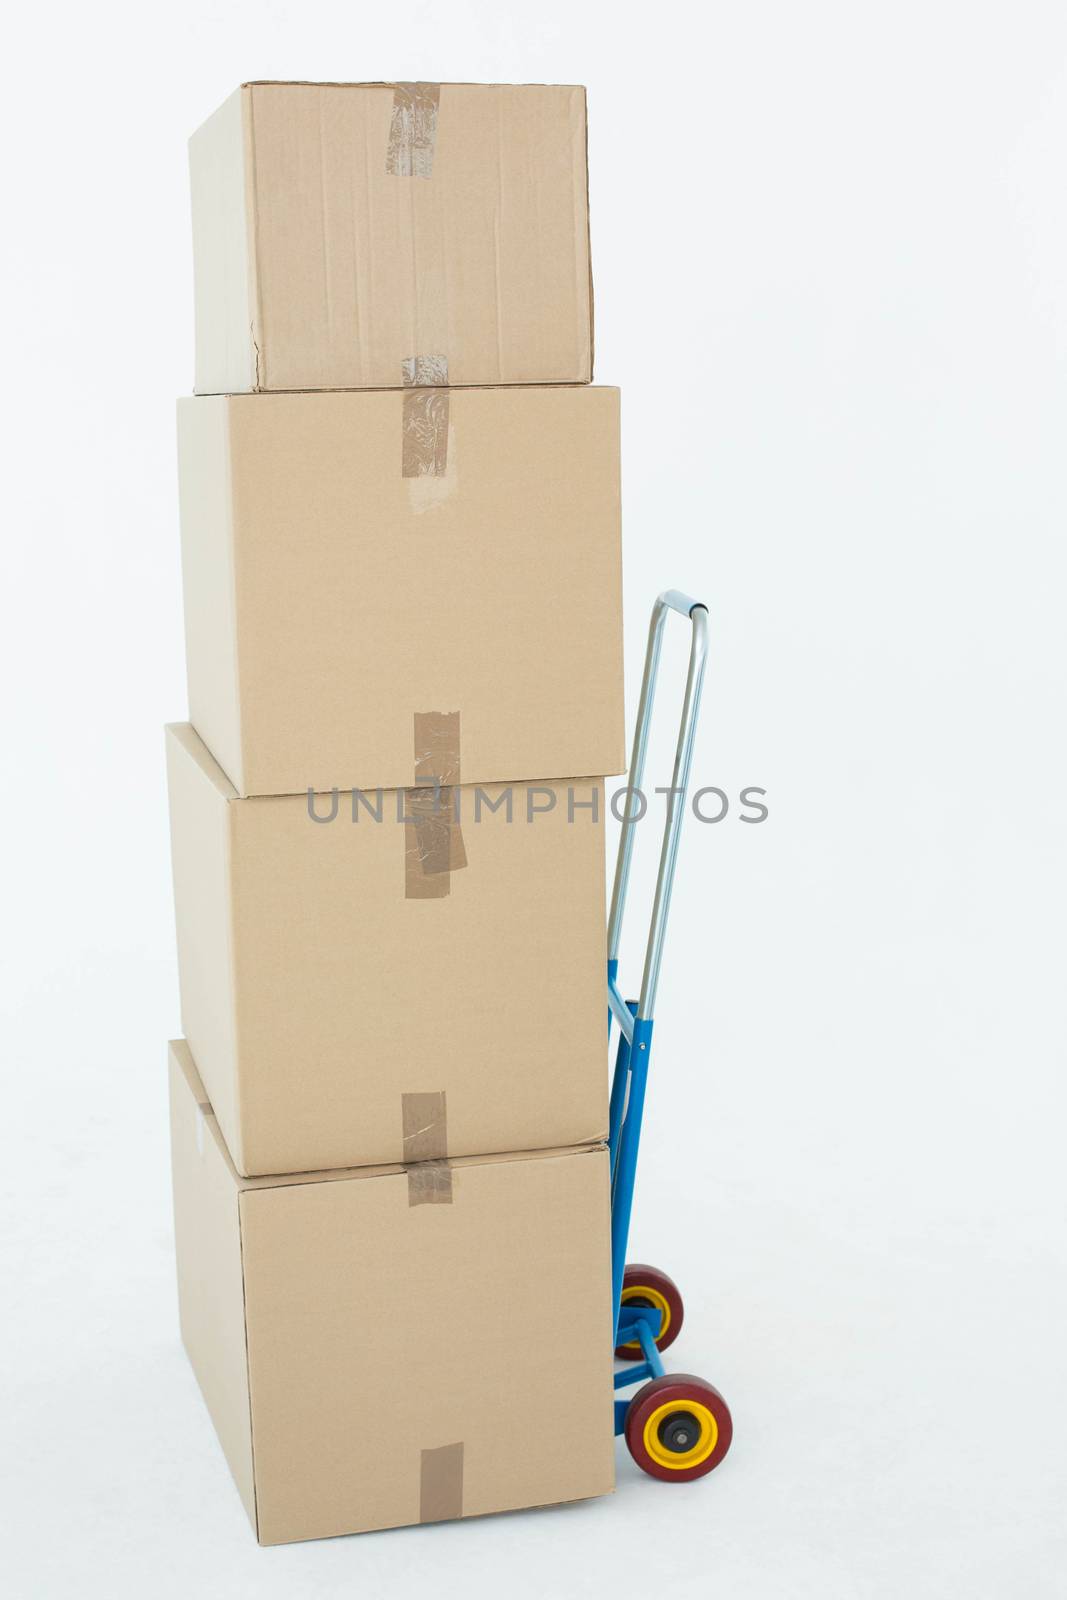 Cardboard boxes on trolley by Wavebreakmedia